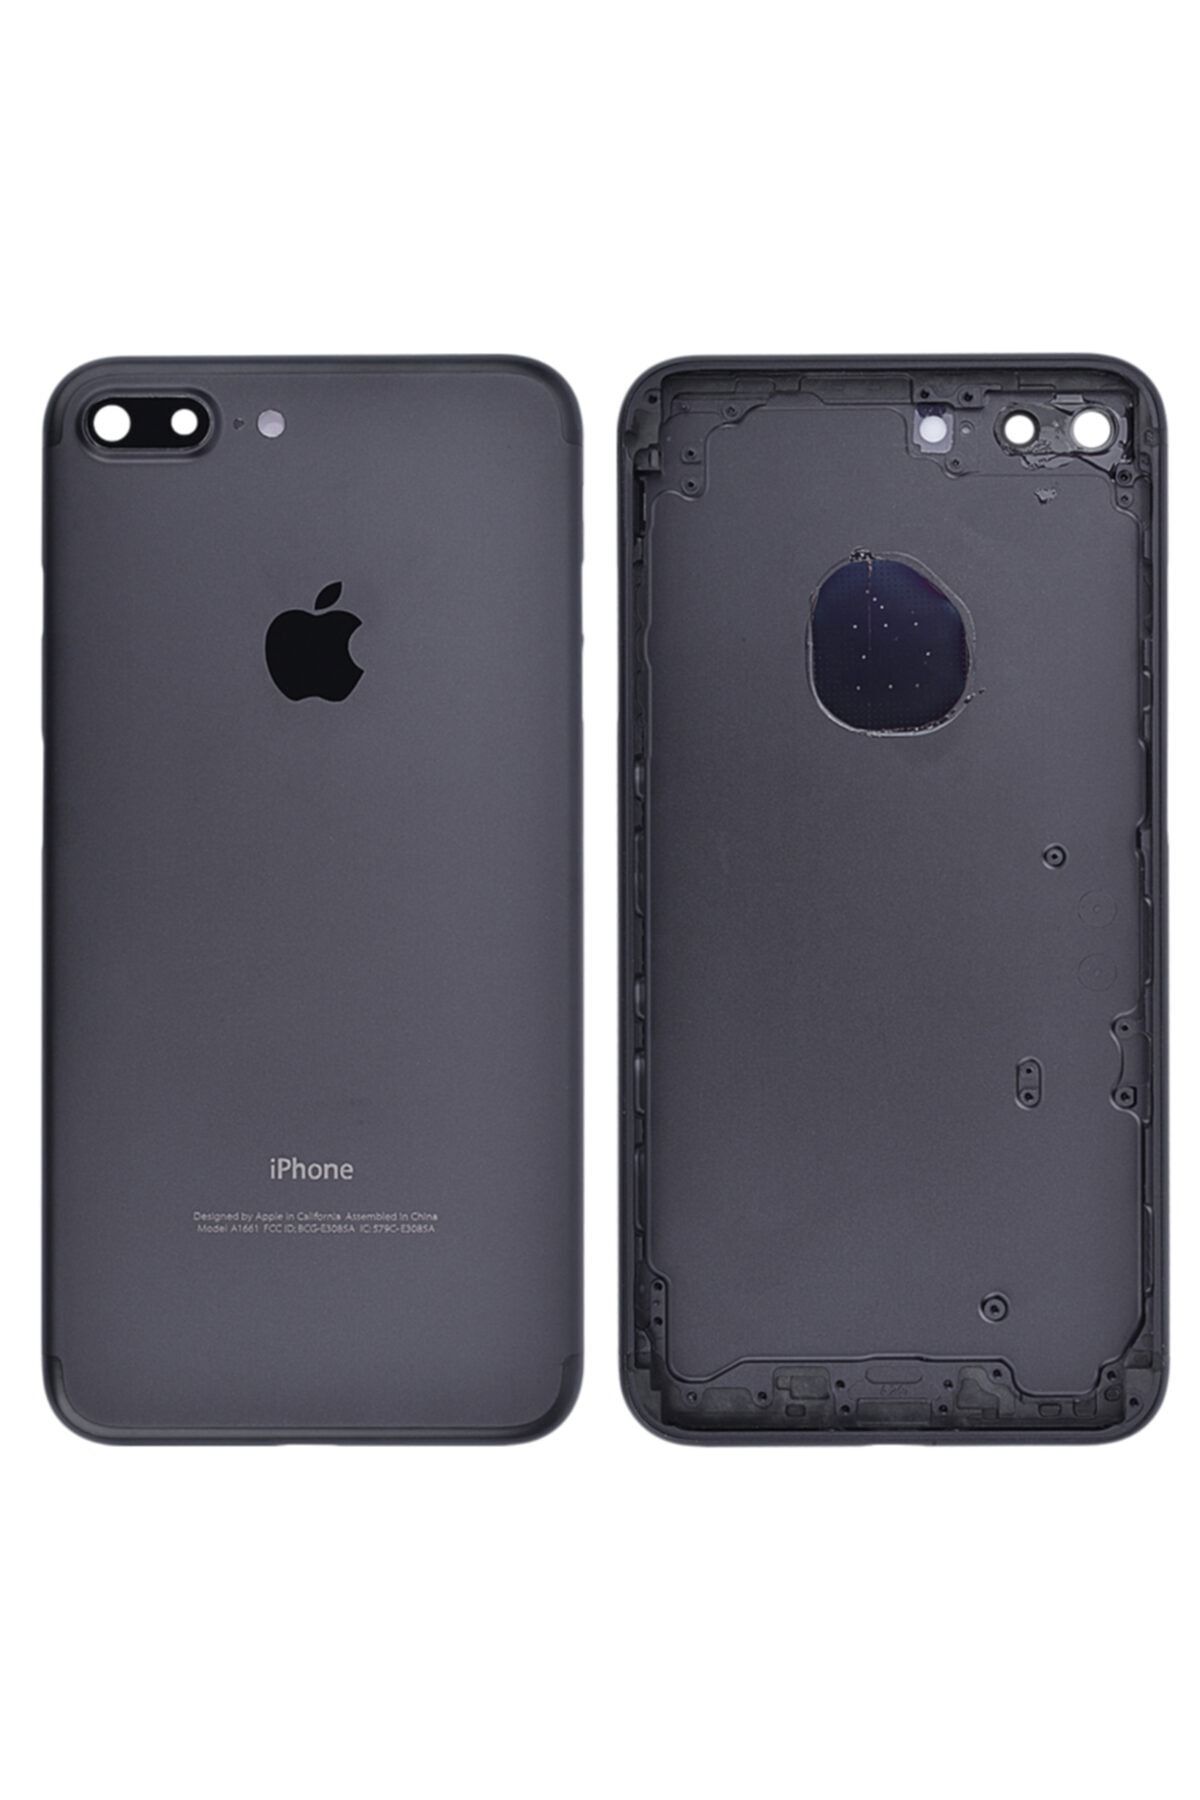 Apple Iphone 7 Plus Uyumlu Kasa Kapak Siyah